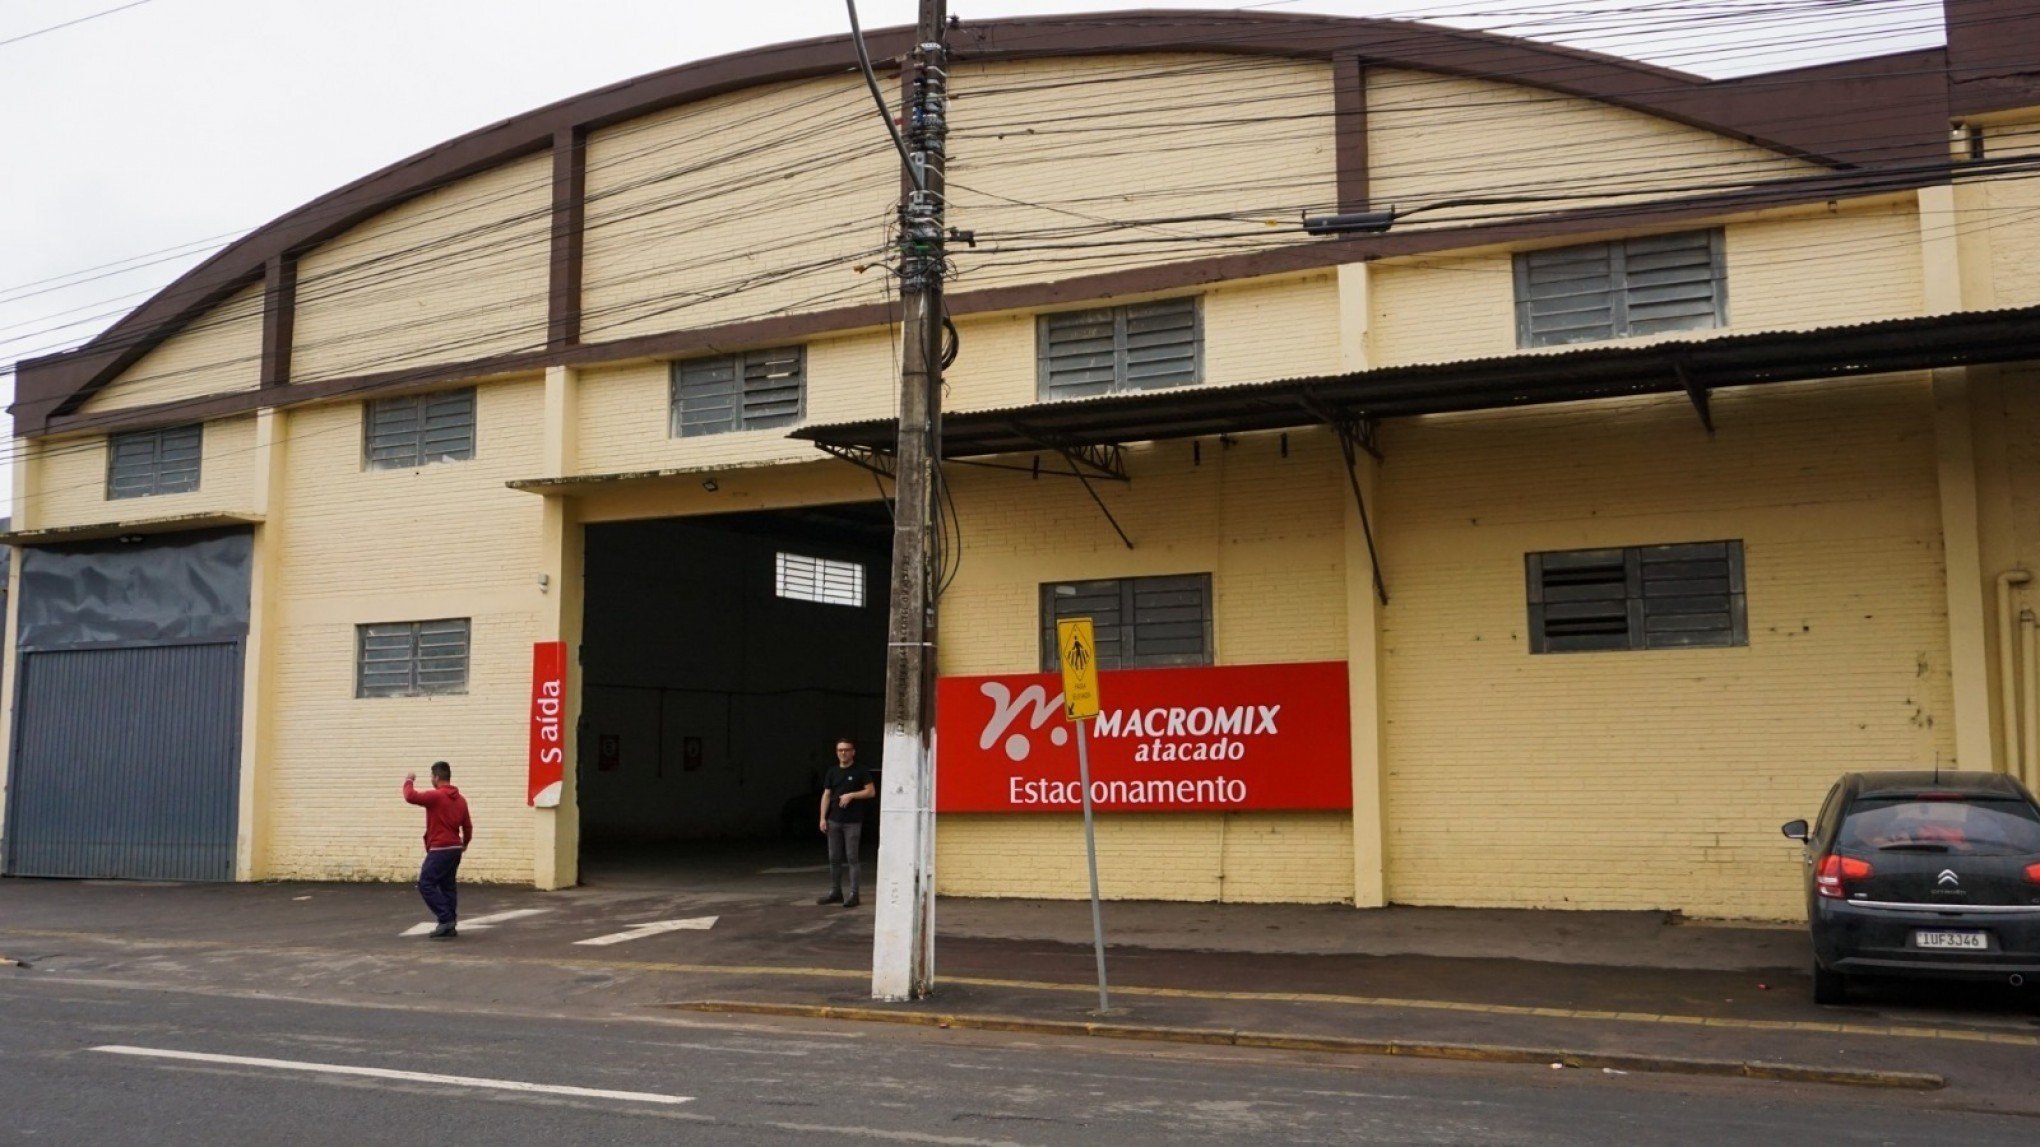 Macromix do bairro Scharlau é a nova Central de Arrecadação de Donativos leopoldense